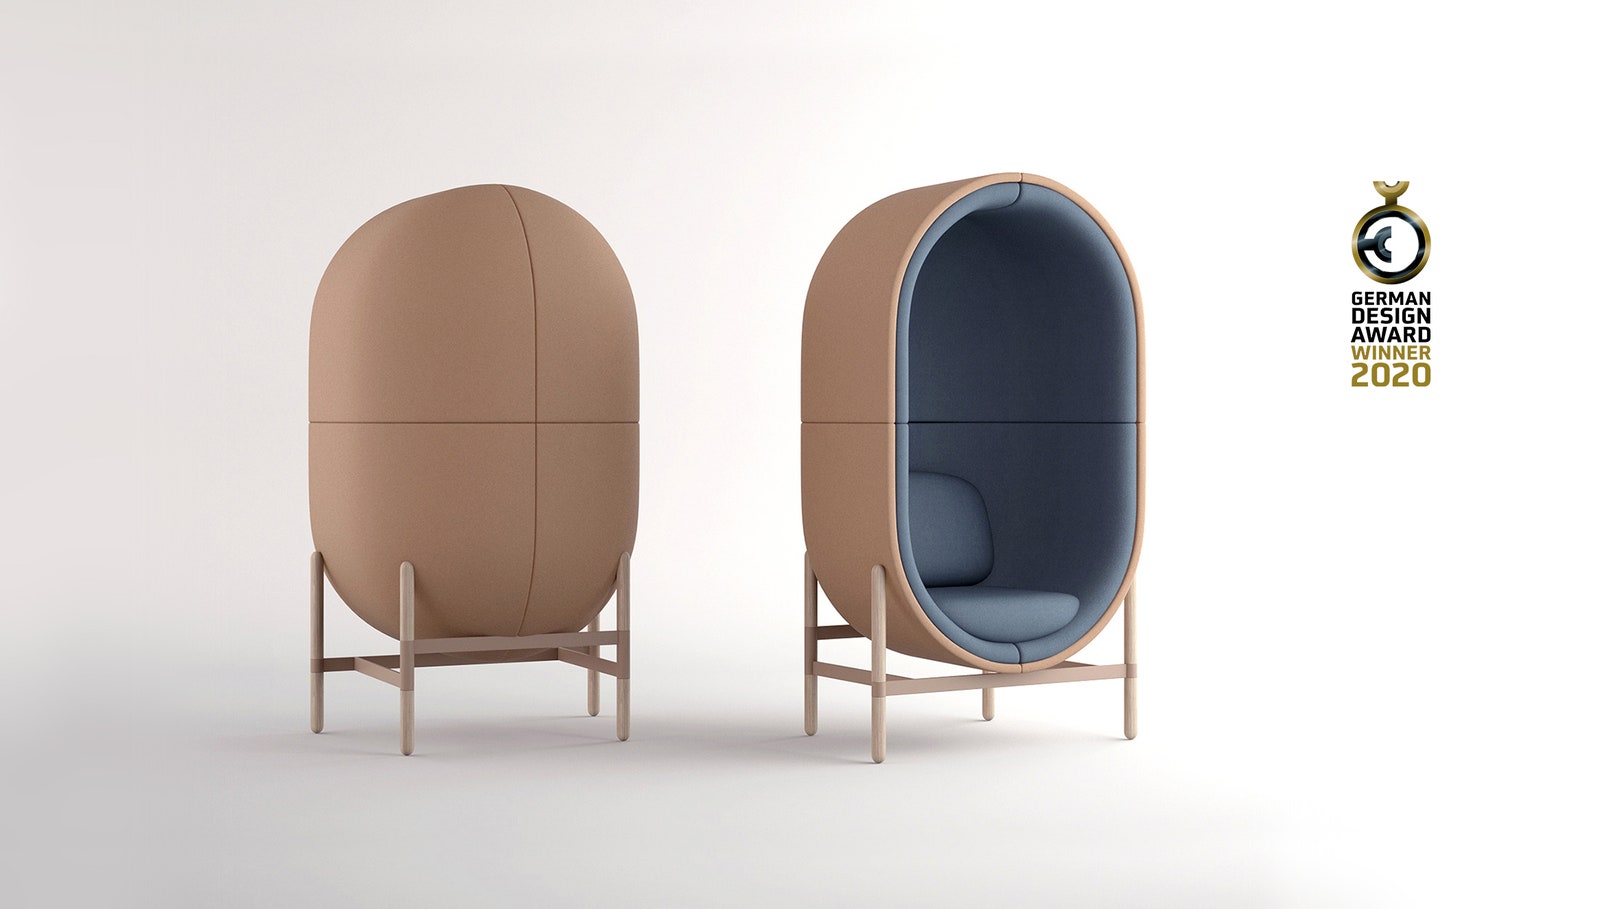 Звукопоглощающее капсульное кресло по дизайну Катерины Соколовой